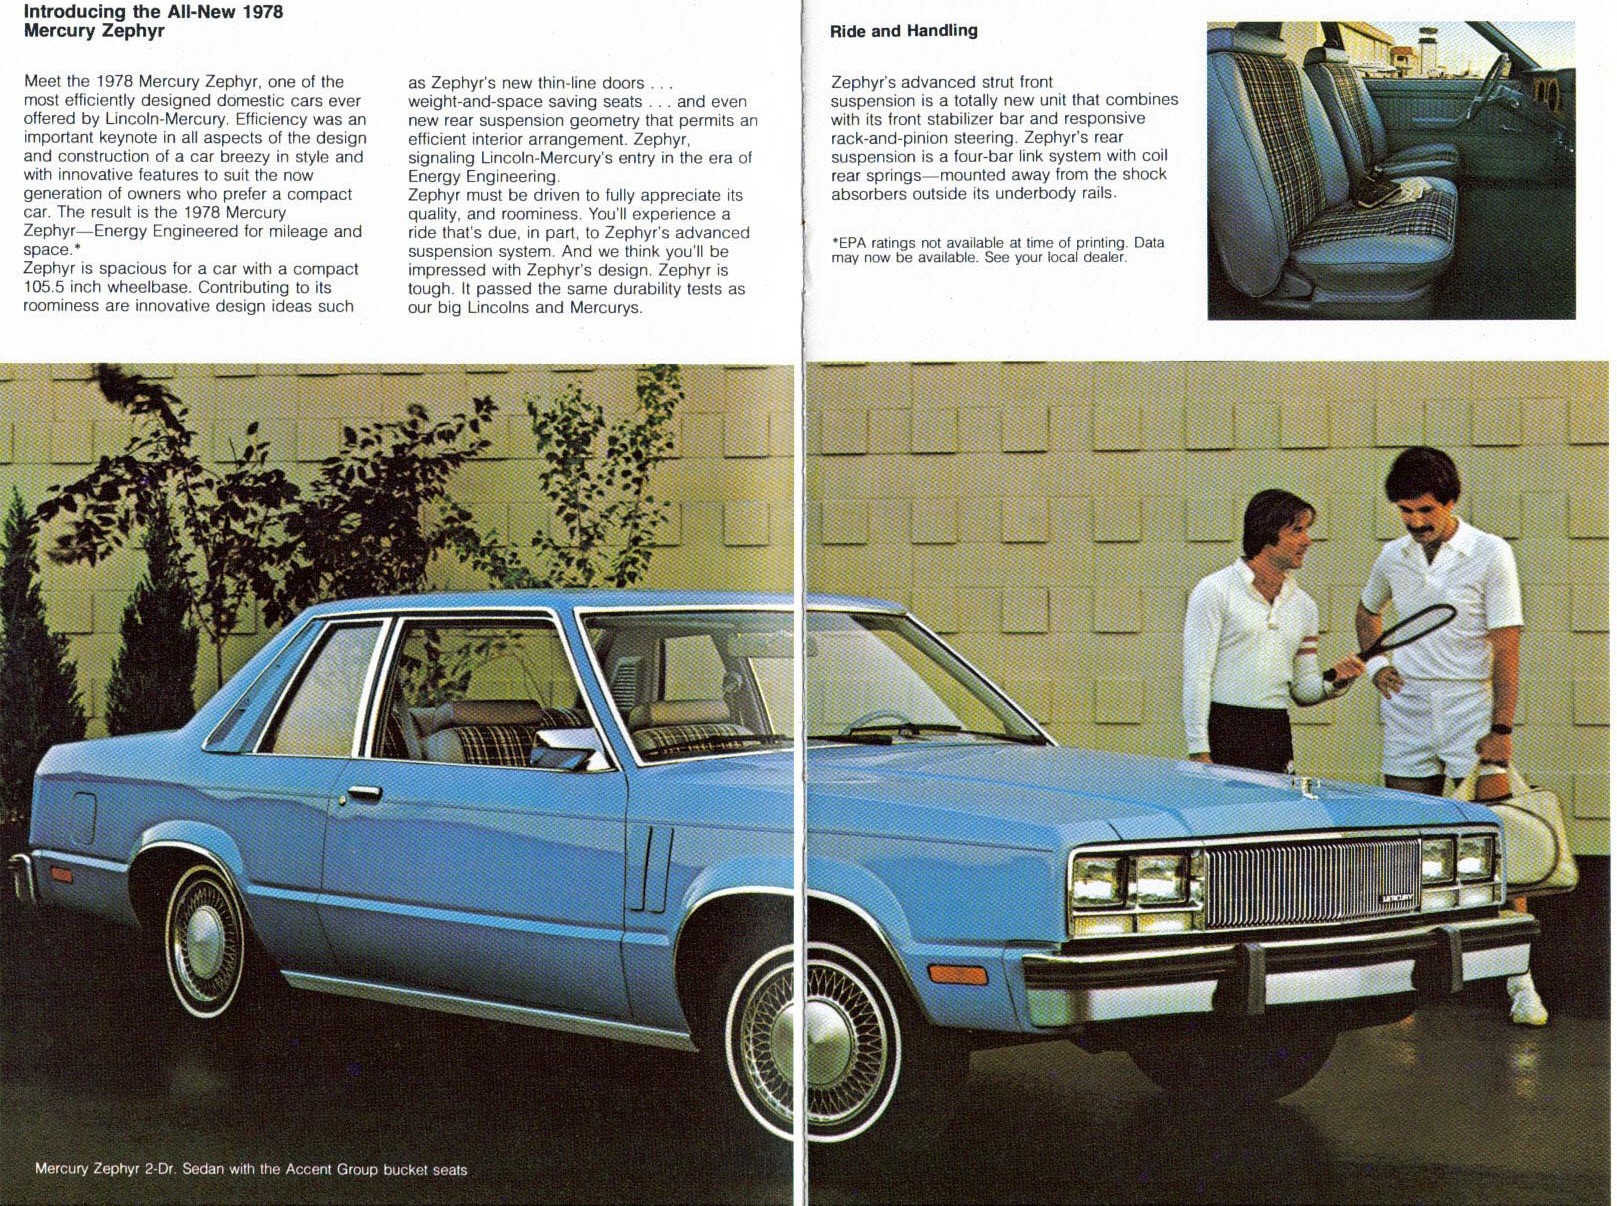 1978 Mercury Zephyr Brochure Page 1